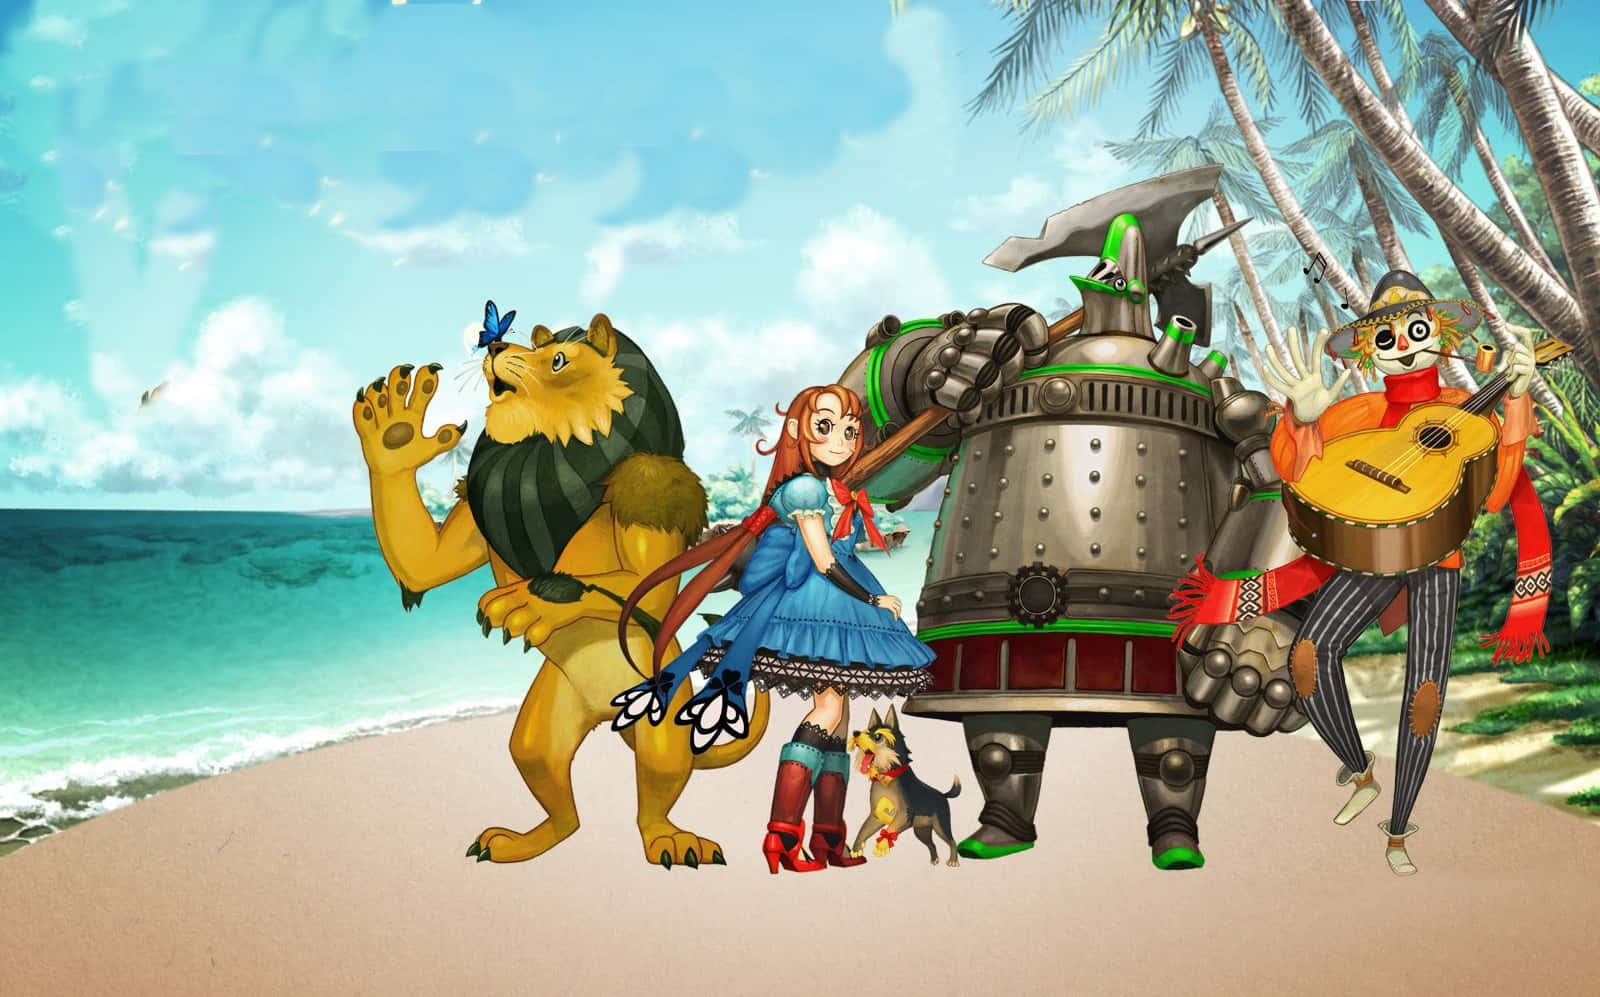 Ungrupo De Personajes Parados En La Playa. Fondo de pantalla